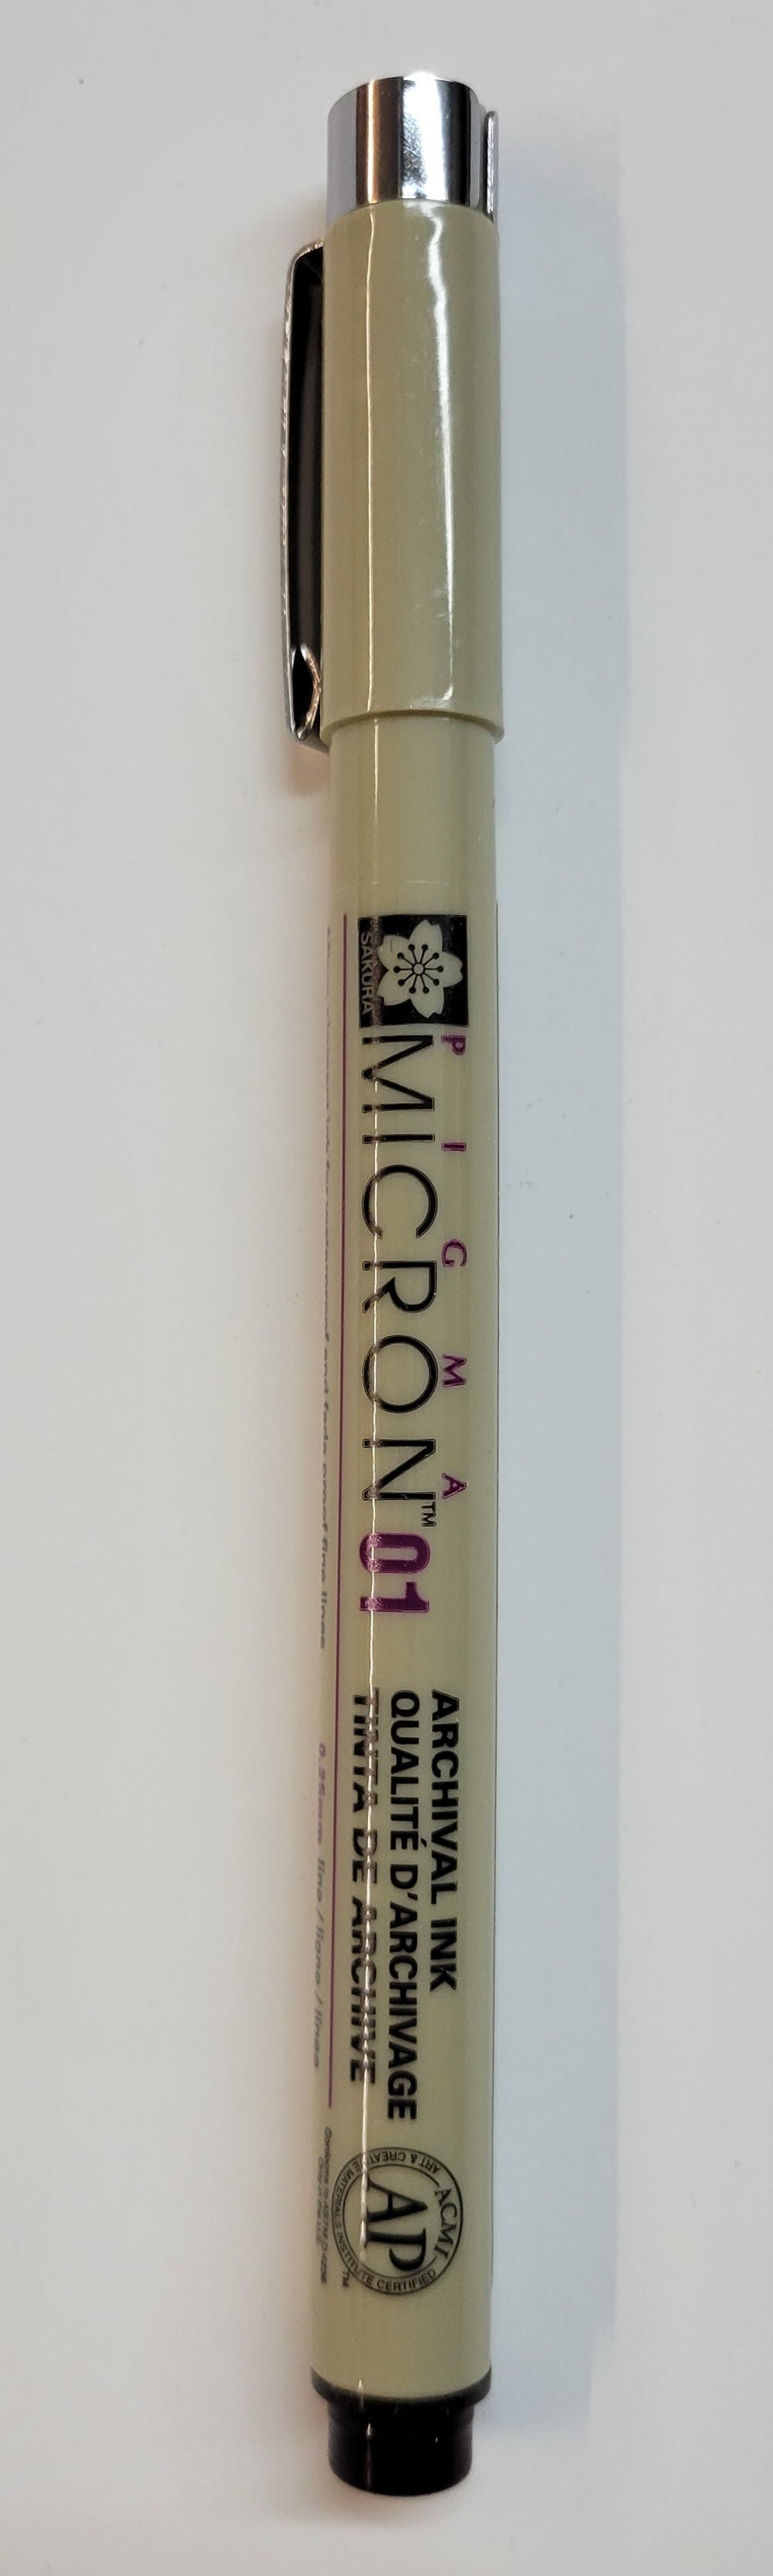 Pen, Pigma Micron 01 by Sakura